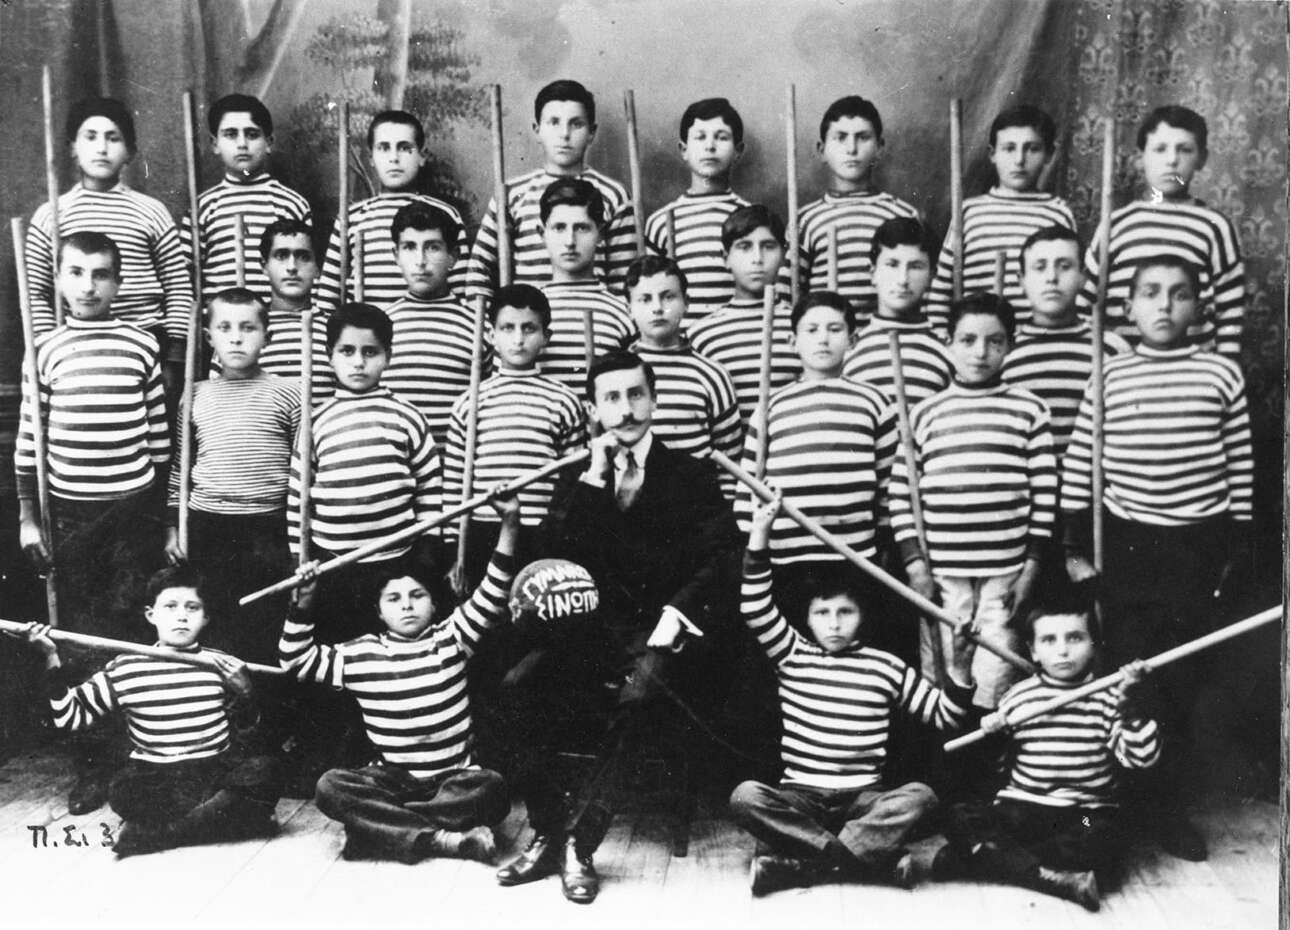 Τα παιδιά του γυμναστηρίου της Σινώπης, στον Πόντο, φωτογραφίζονται με τον δάσκαλό τους (1909 - 1910)